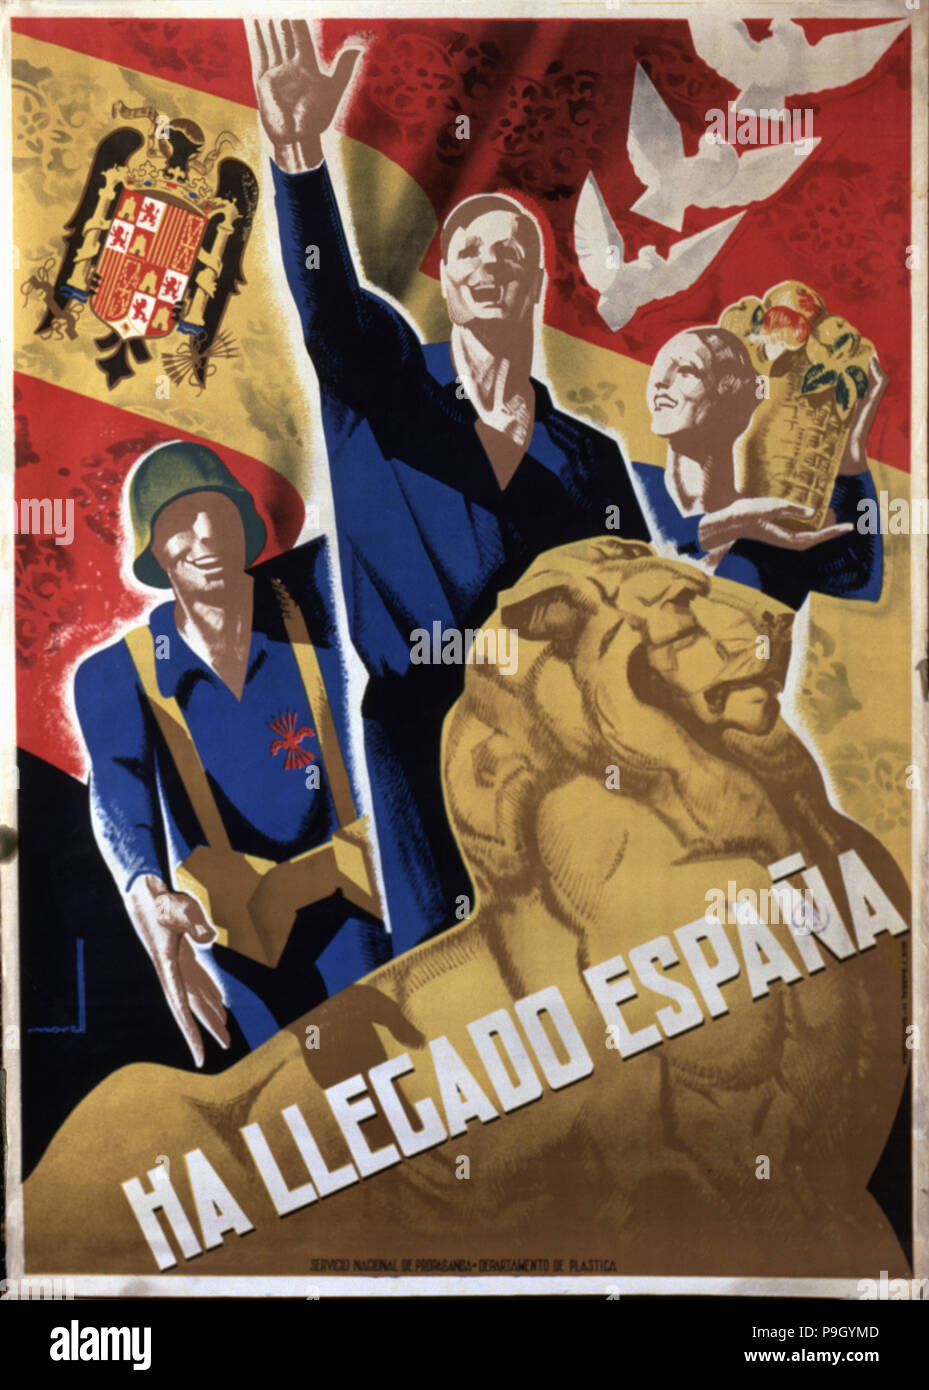 Guerre civile espagnole (1936 - 1939), 'a' est arrivée, une affiche publiée par le Service National de… Banque D'Images